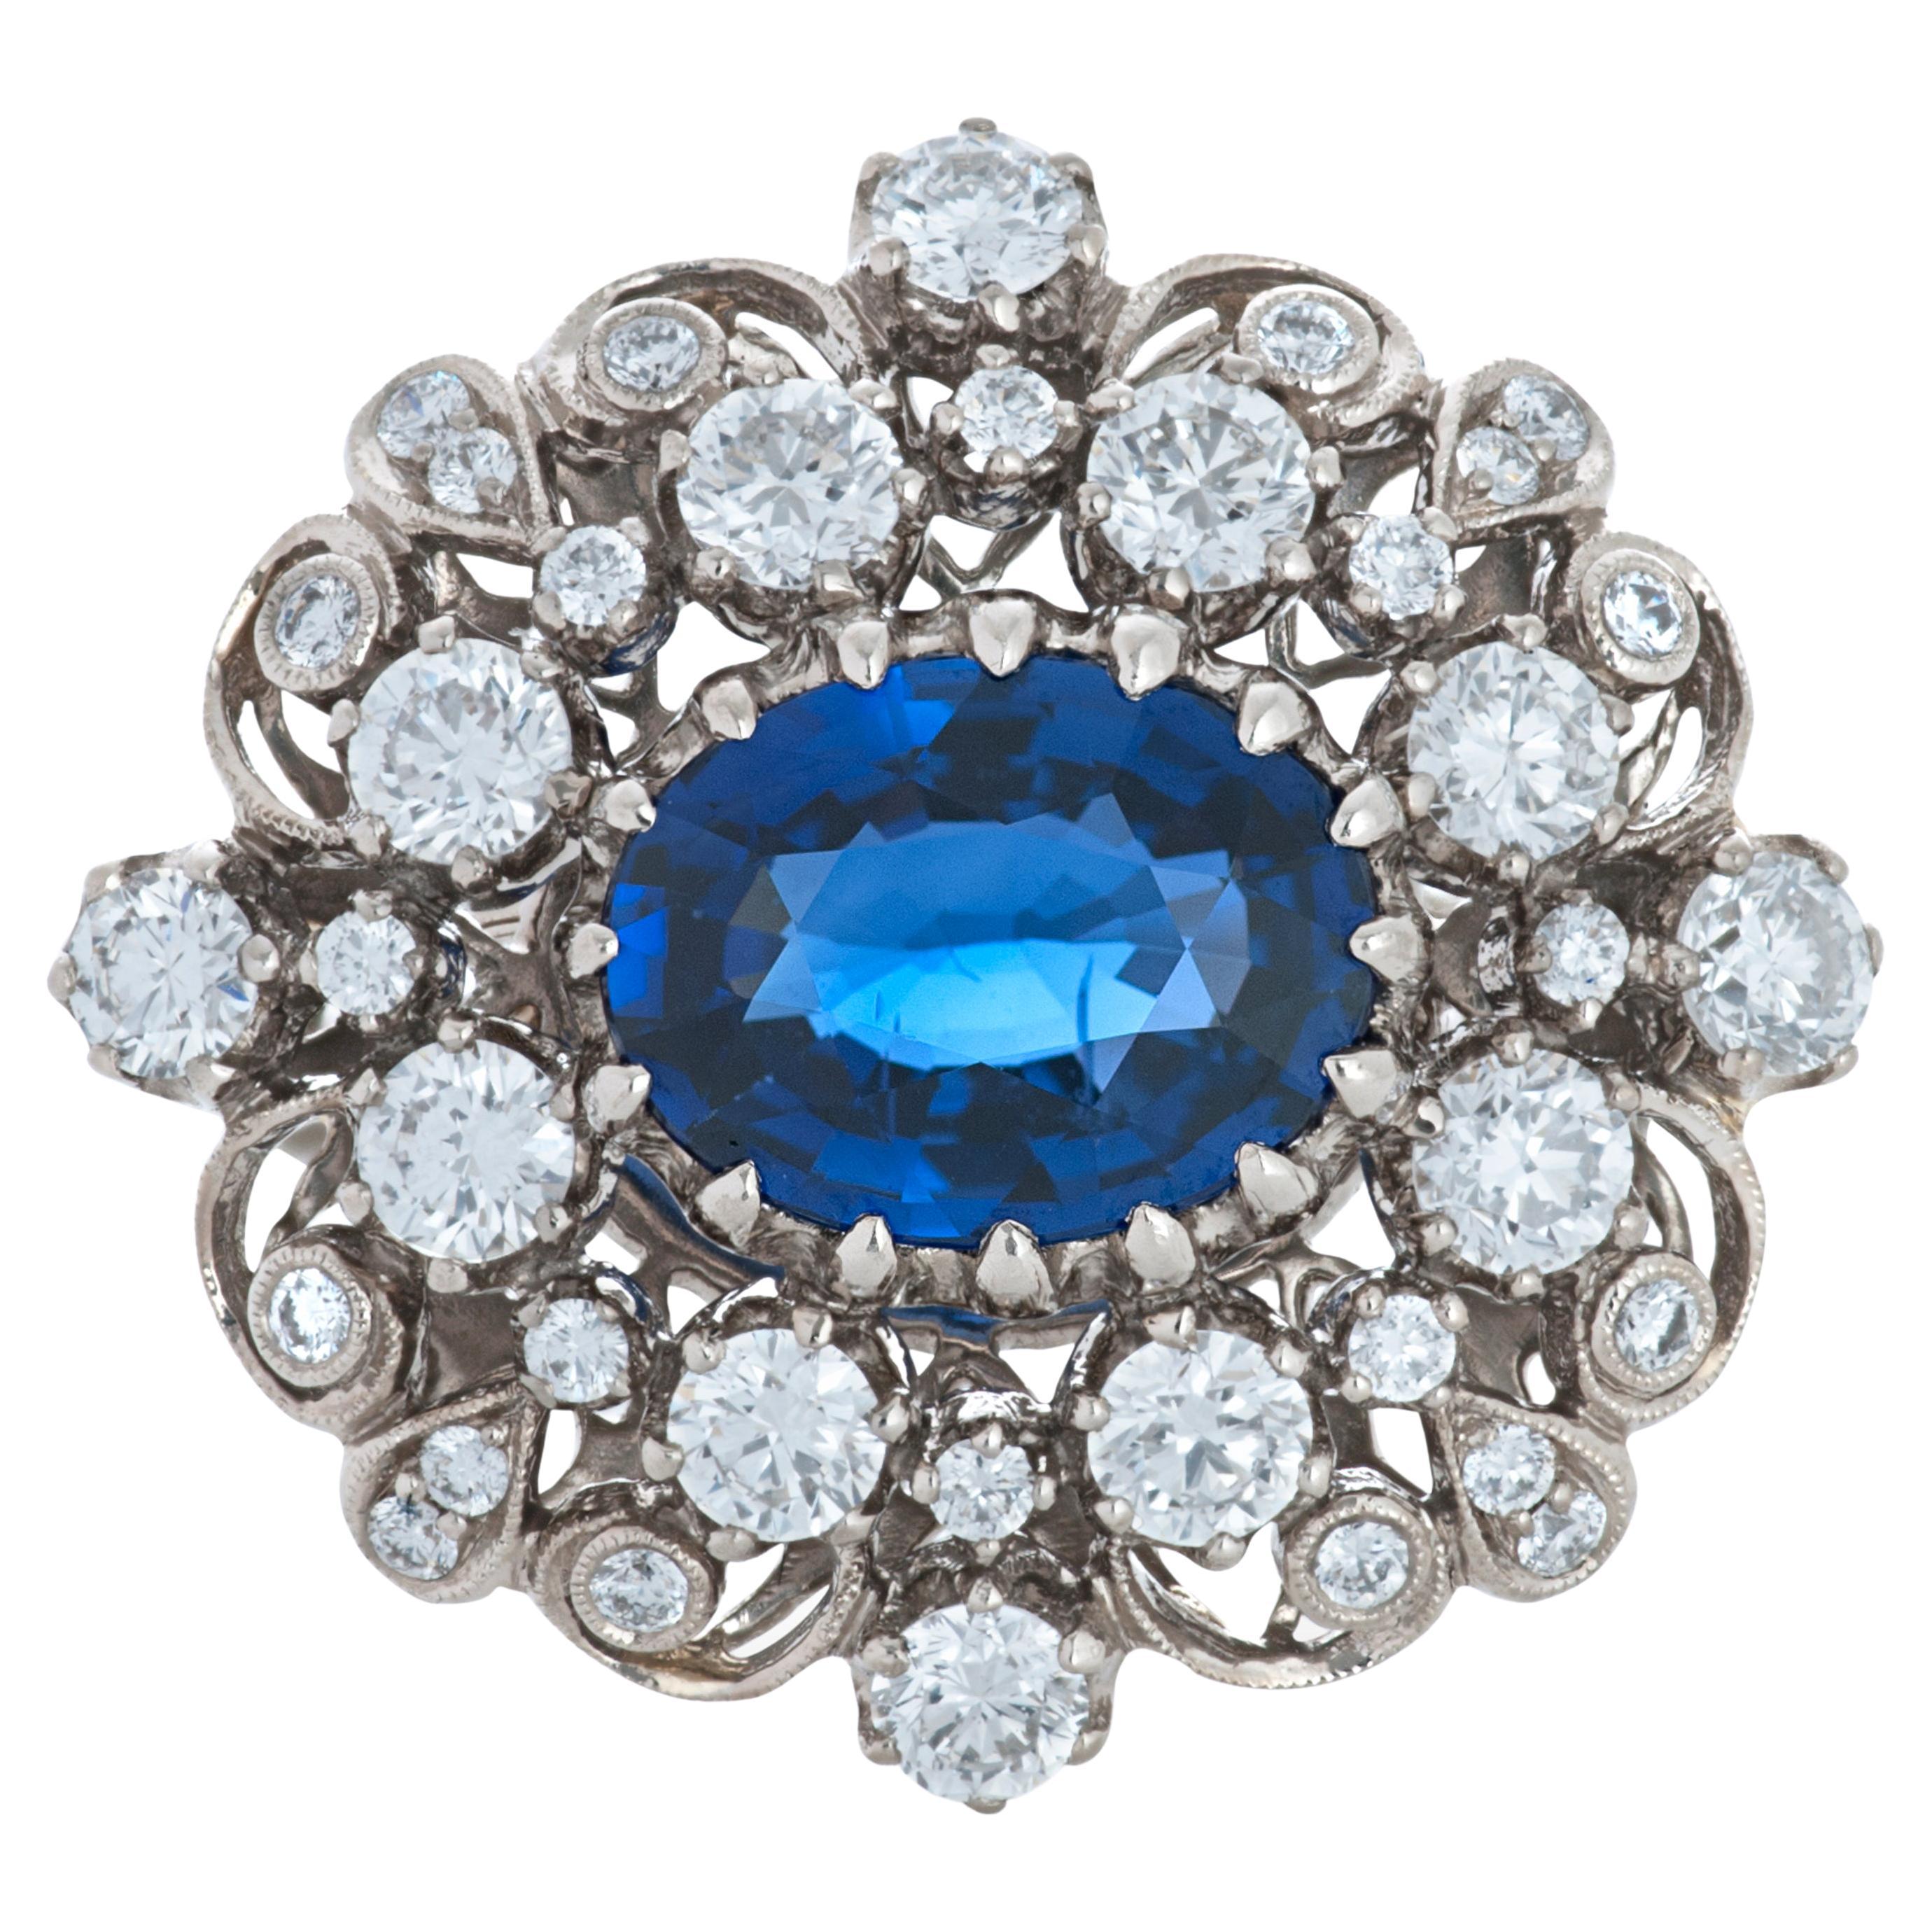 Kwiat Vintage Collection Art Deco Stil Saphir und Diamant 18k Weißgold Ring.  

Der Mittelstein dieses Rings ist ein ovaler Saphir von 2,00 Karat, umgeben von 36 runden Diamanten von insgesamt etwa 1,00 Karat mit geschätzter Farbe G-H und Reinheit